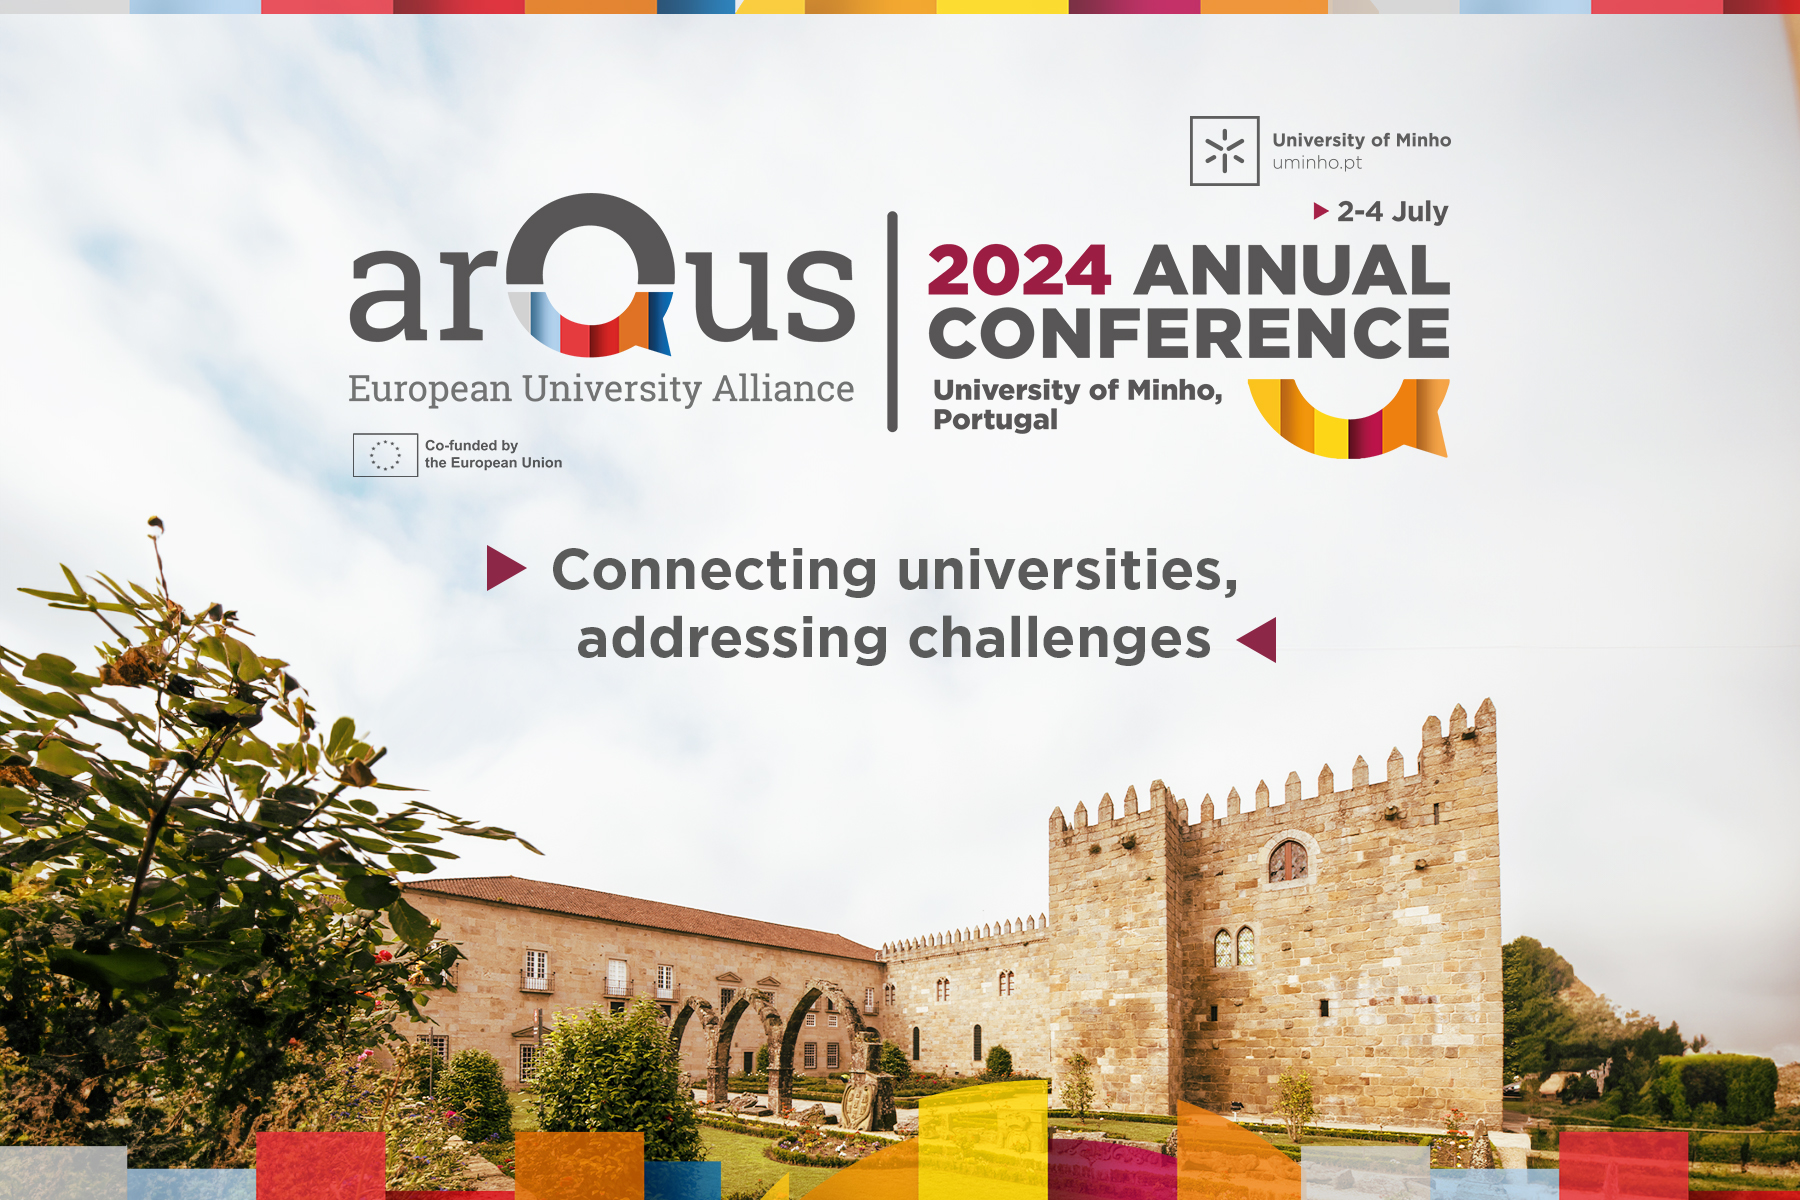 La UGR estará representada en la 4ª Conferencia Anual de Arqus